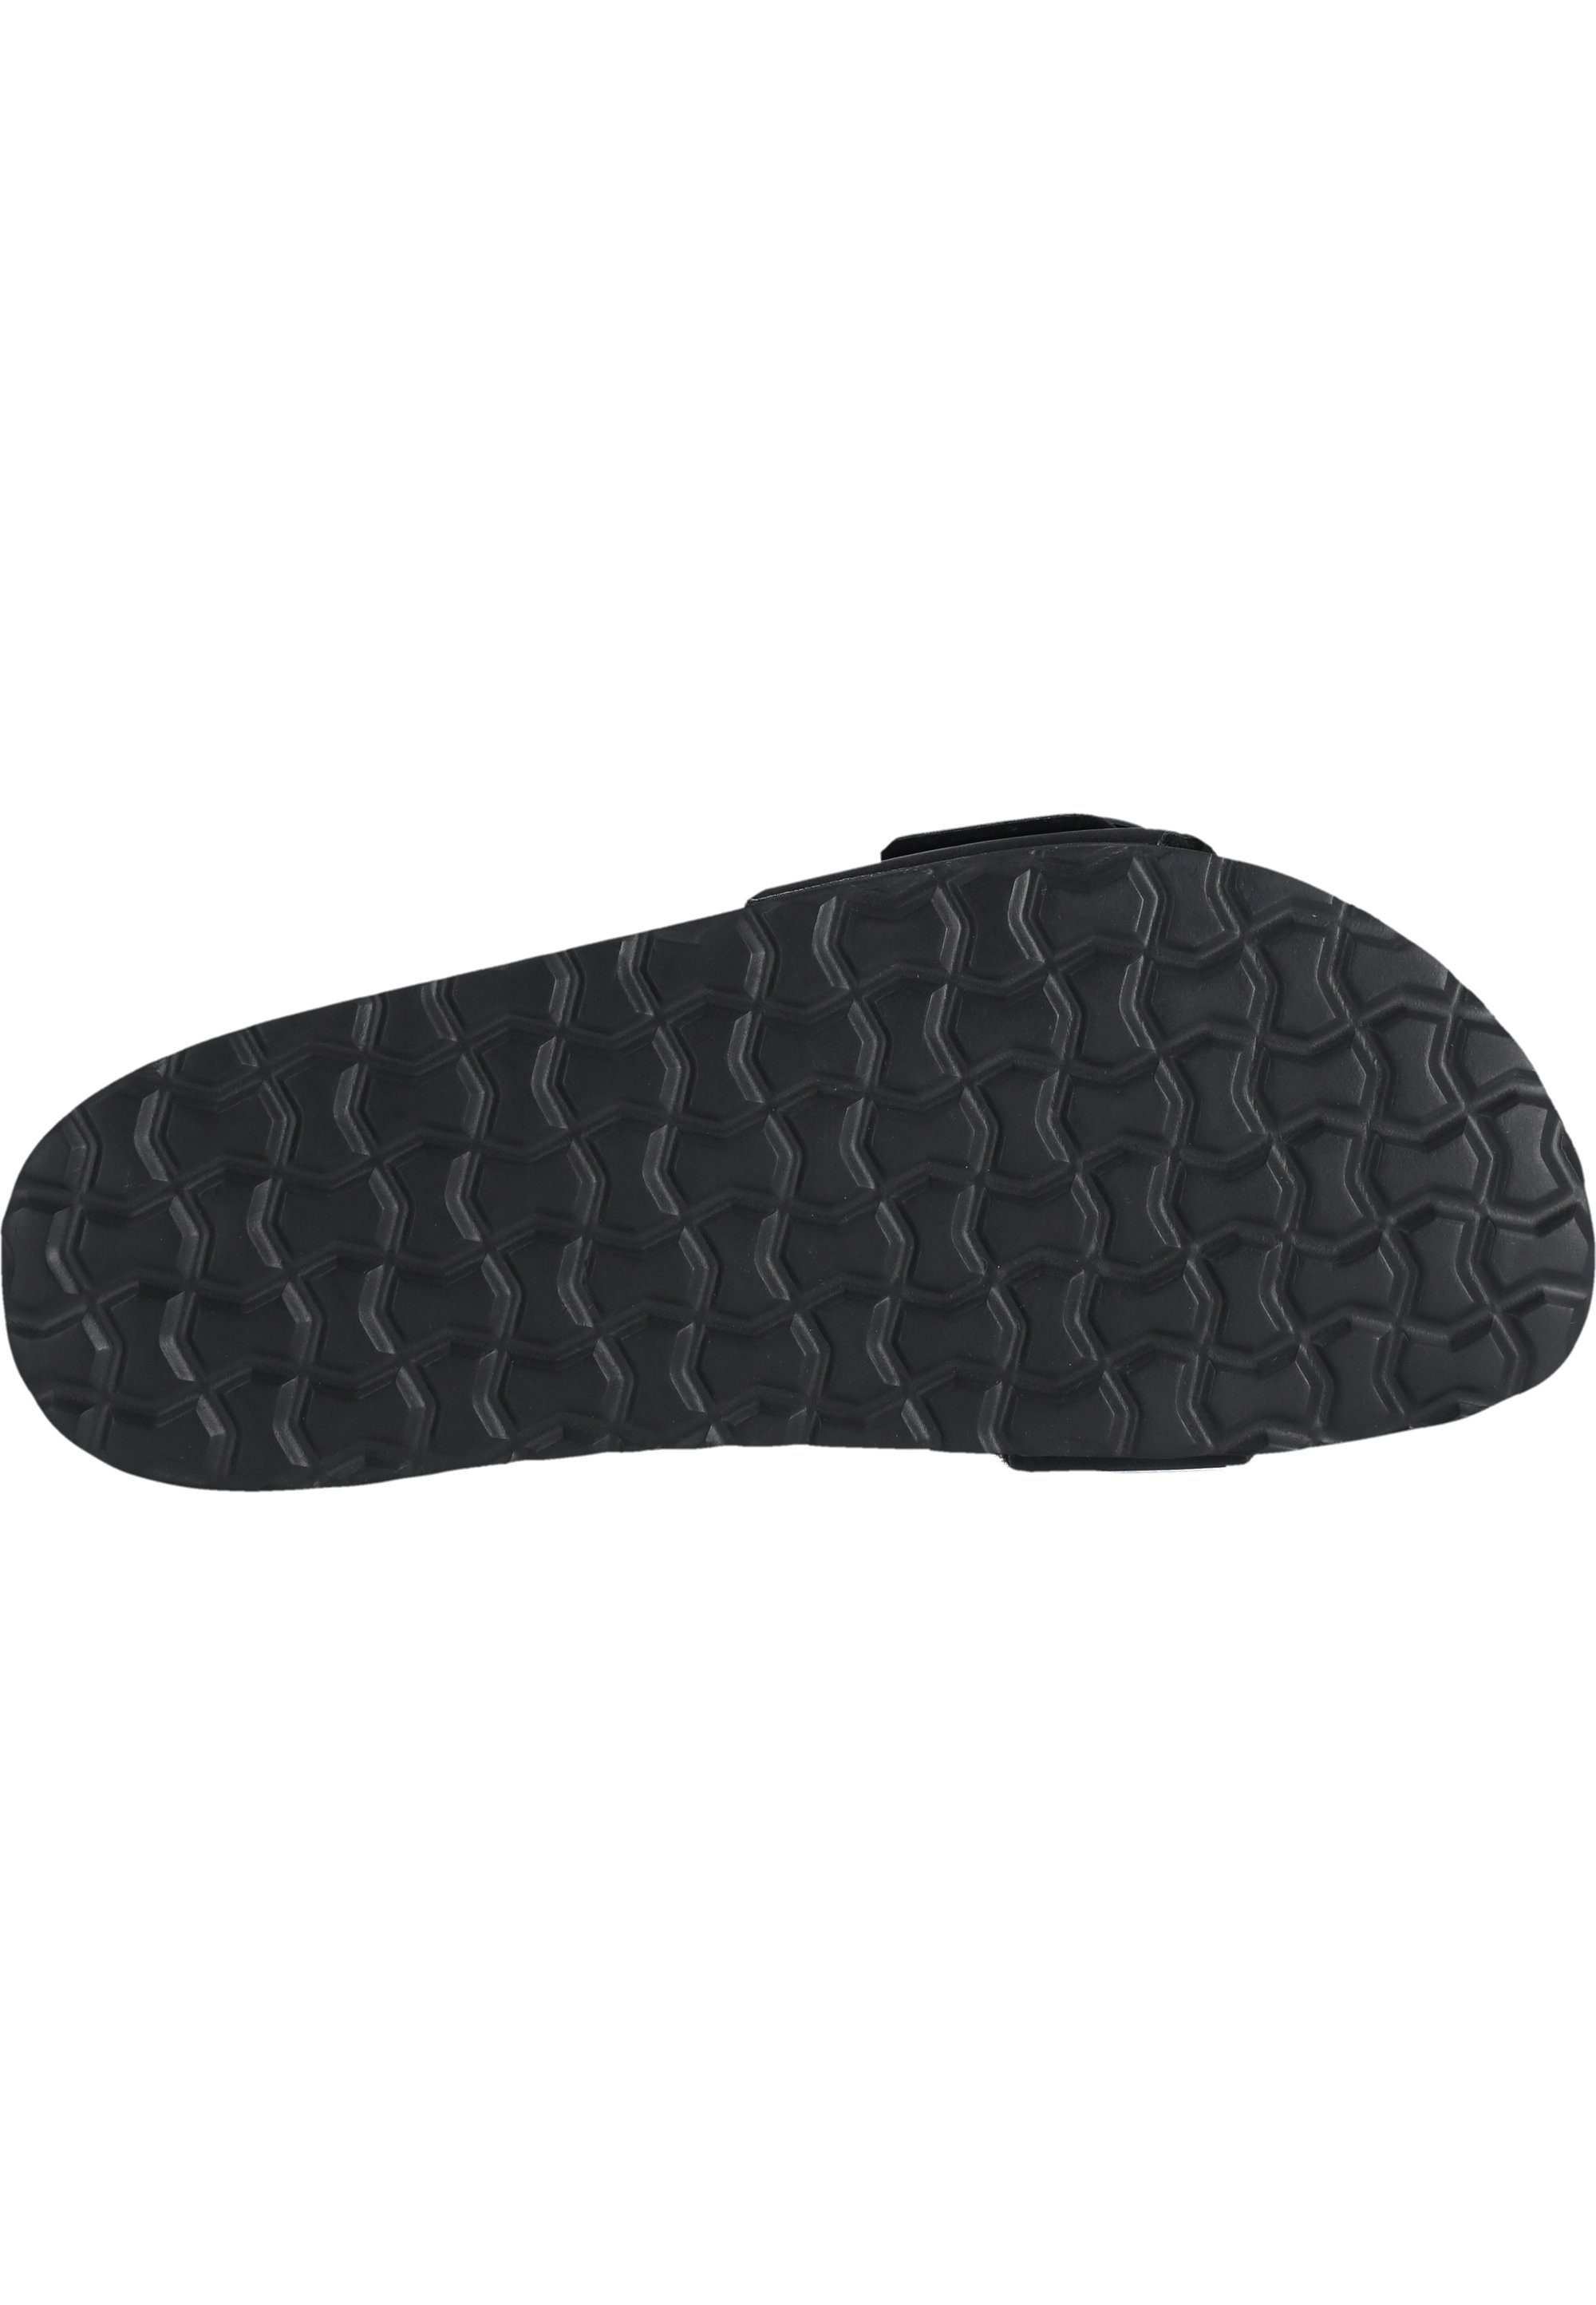 Sandale mit Ferse CRUZ Dreya schwarz gepolsterter